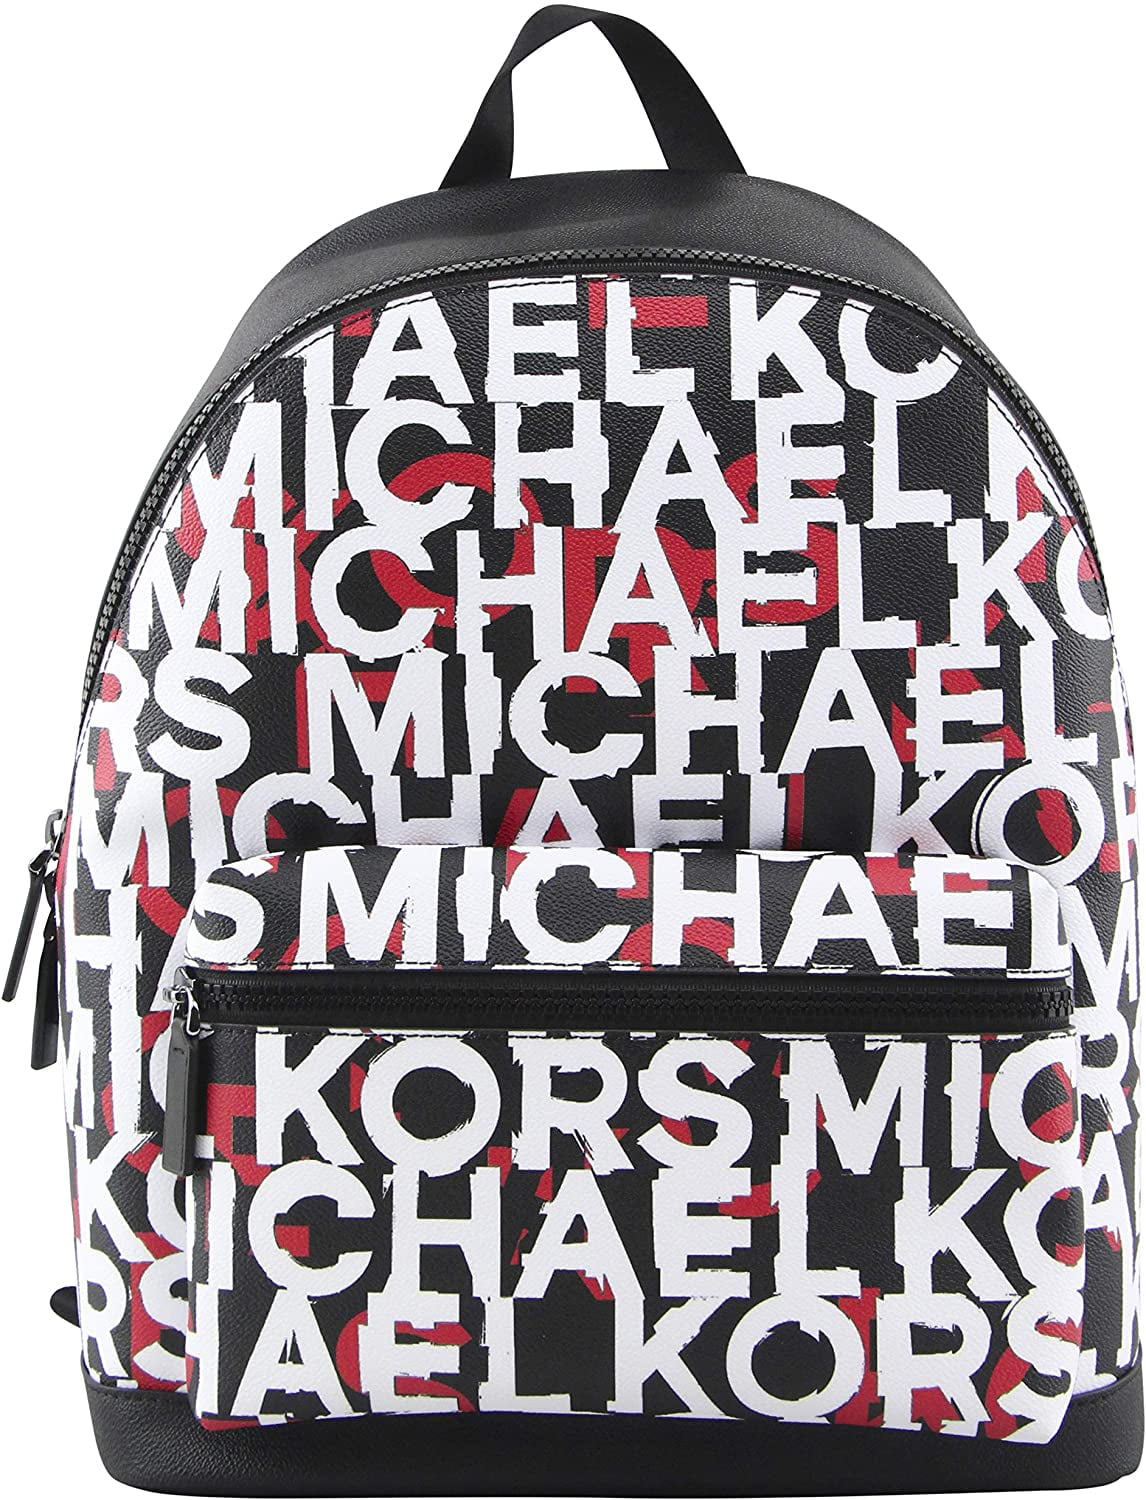 MICHAEL KORS MENS Cooper Monogram Backpack Bag, Black/Mandarin